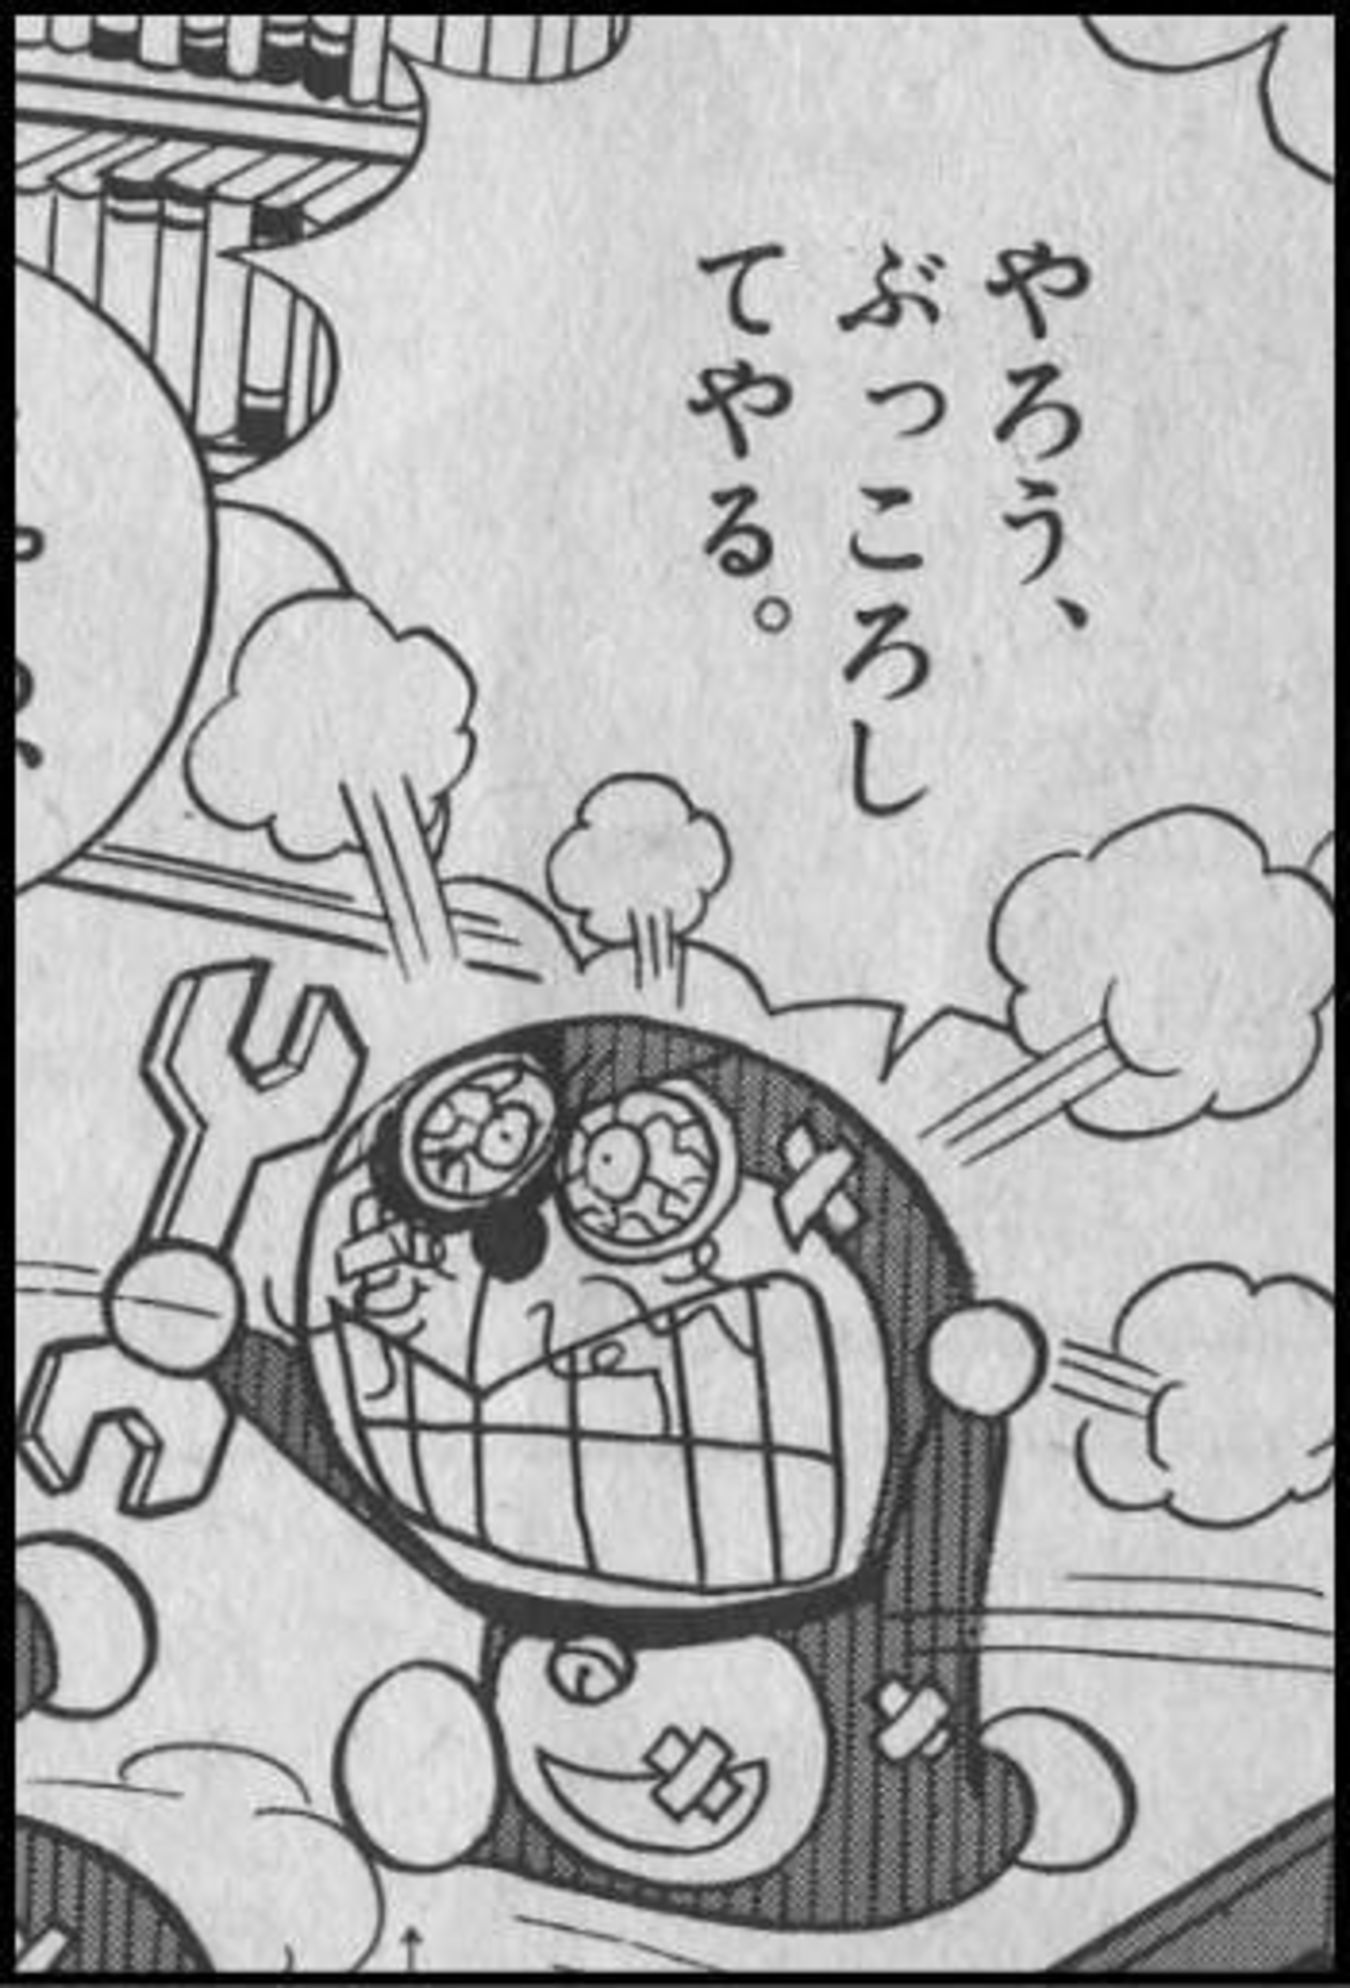 適切な ライン に 使える 画像 新しいイラスト漫画日本21